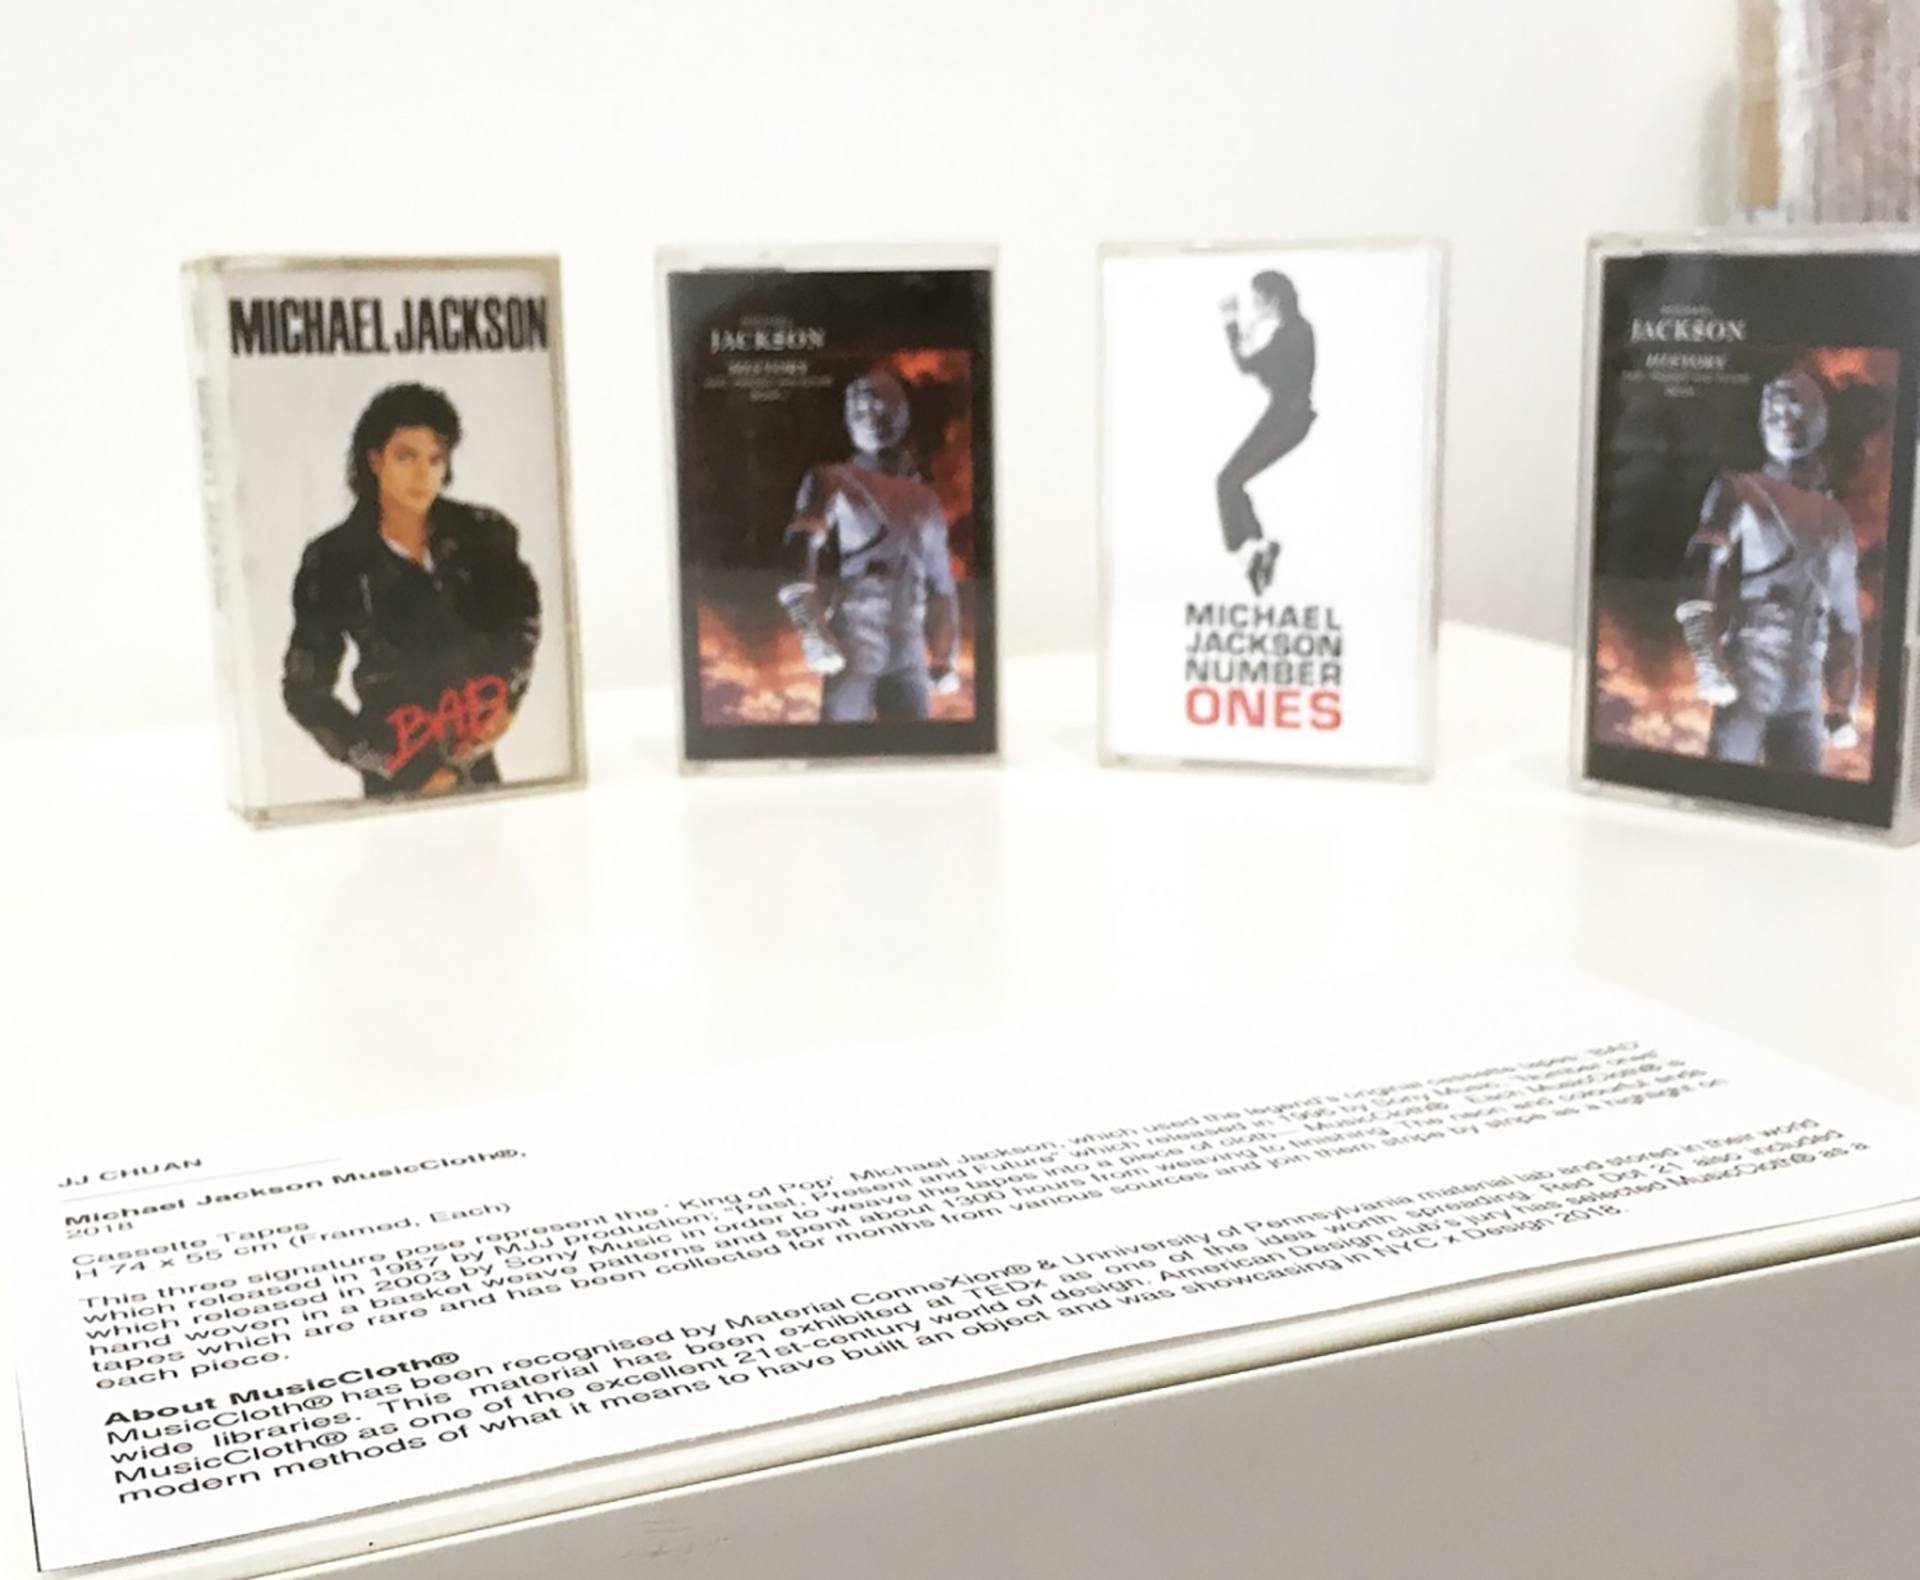 Lateral do PSG faz 'pose de Michael Jackson' em capa de revista